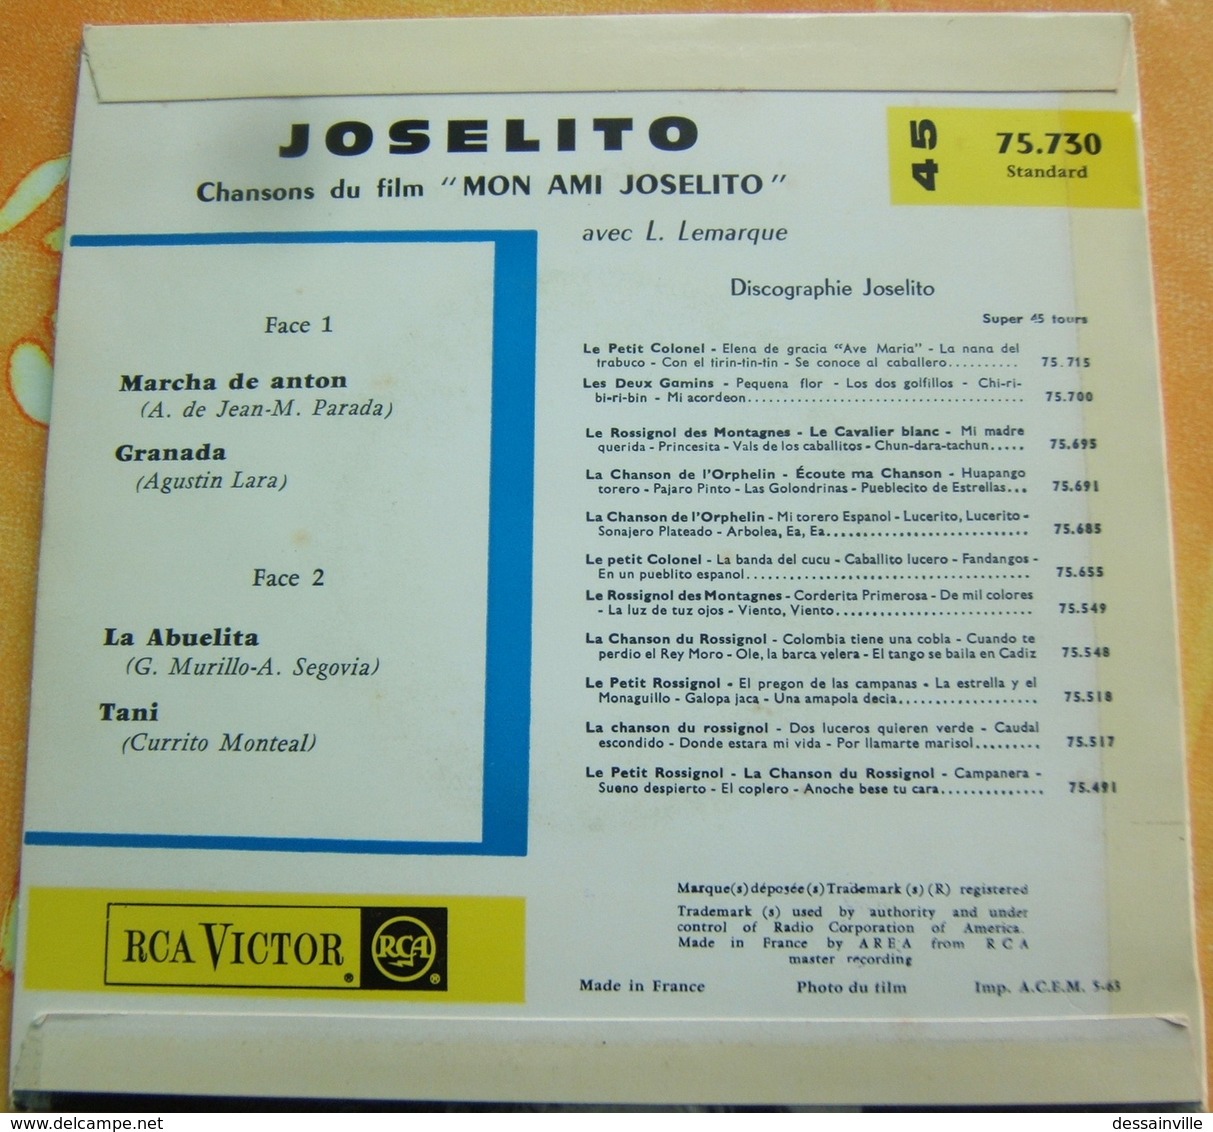 45 Tours - JOSELITO Chansons Du Film (Canciones De La Pelicula) MON AMI JOSELITO - RCA 75.730 - Altri - Musica Spagnola